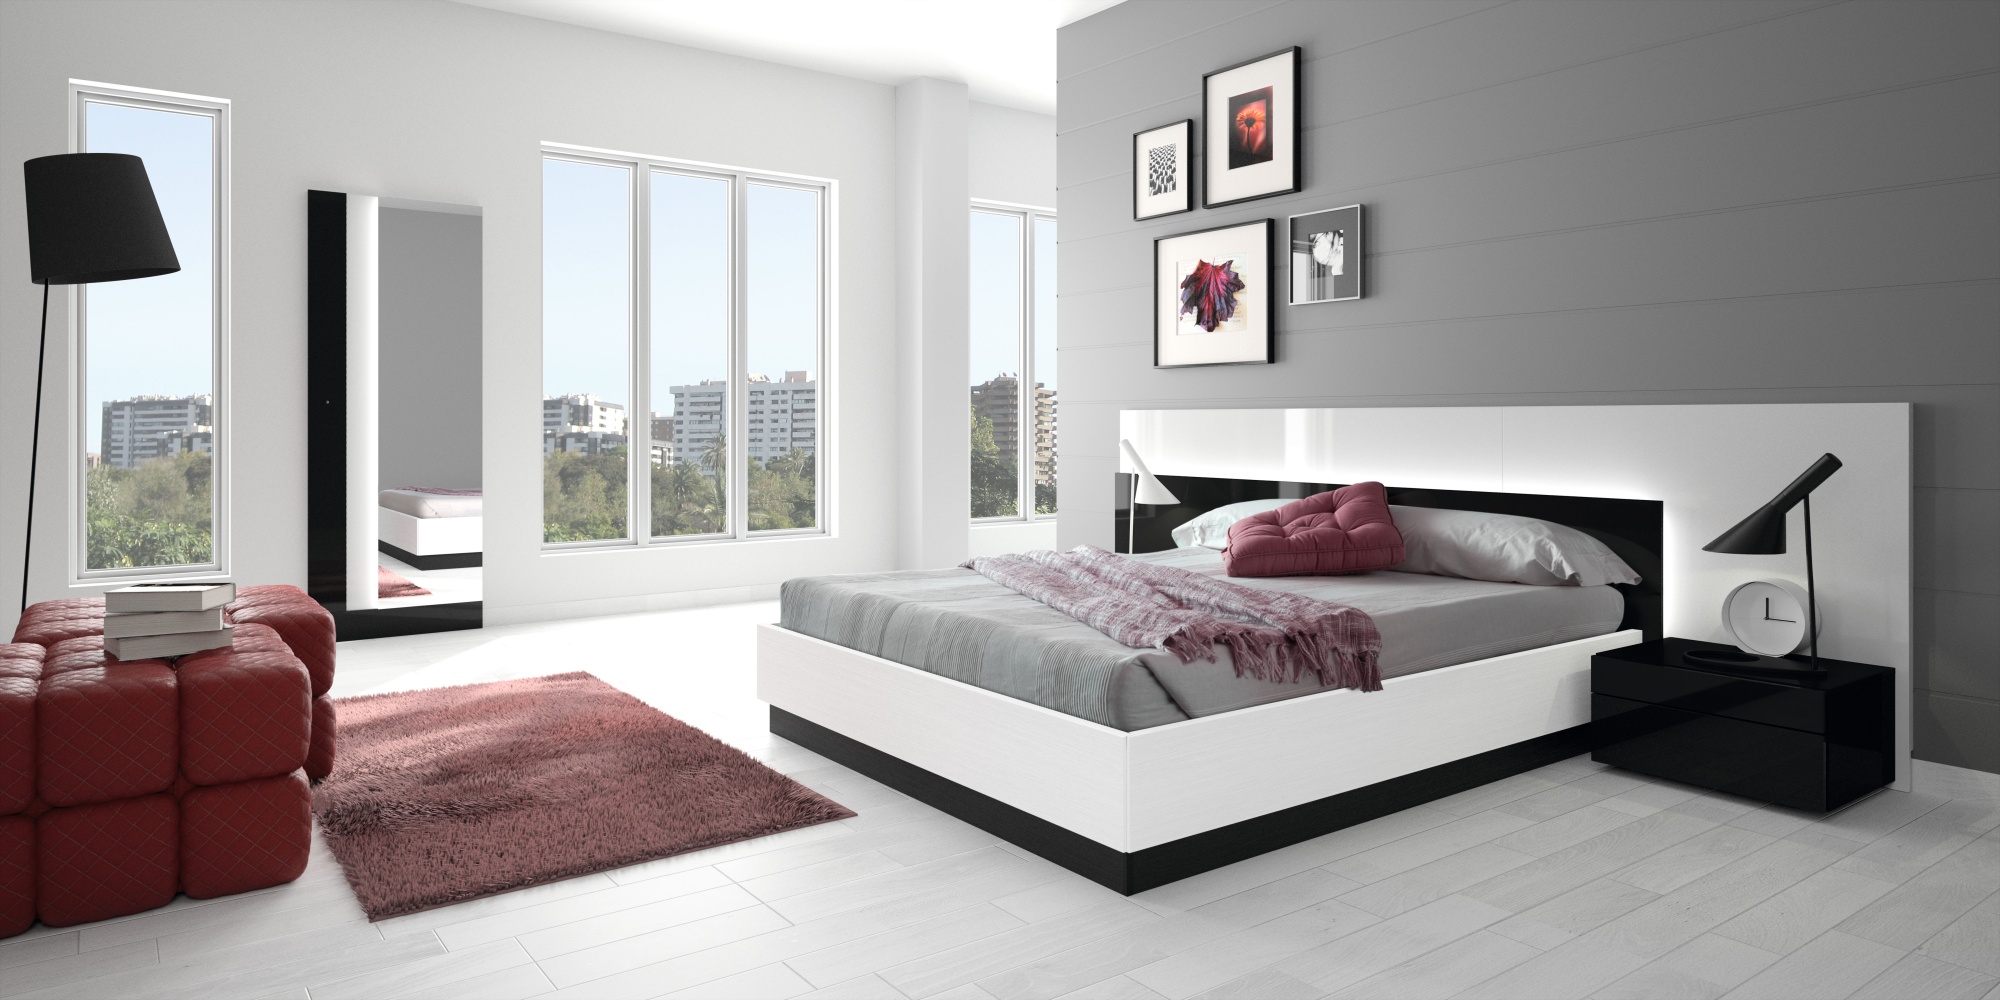 by design bedroom furniture